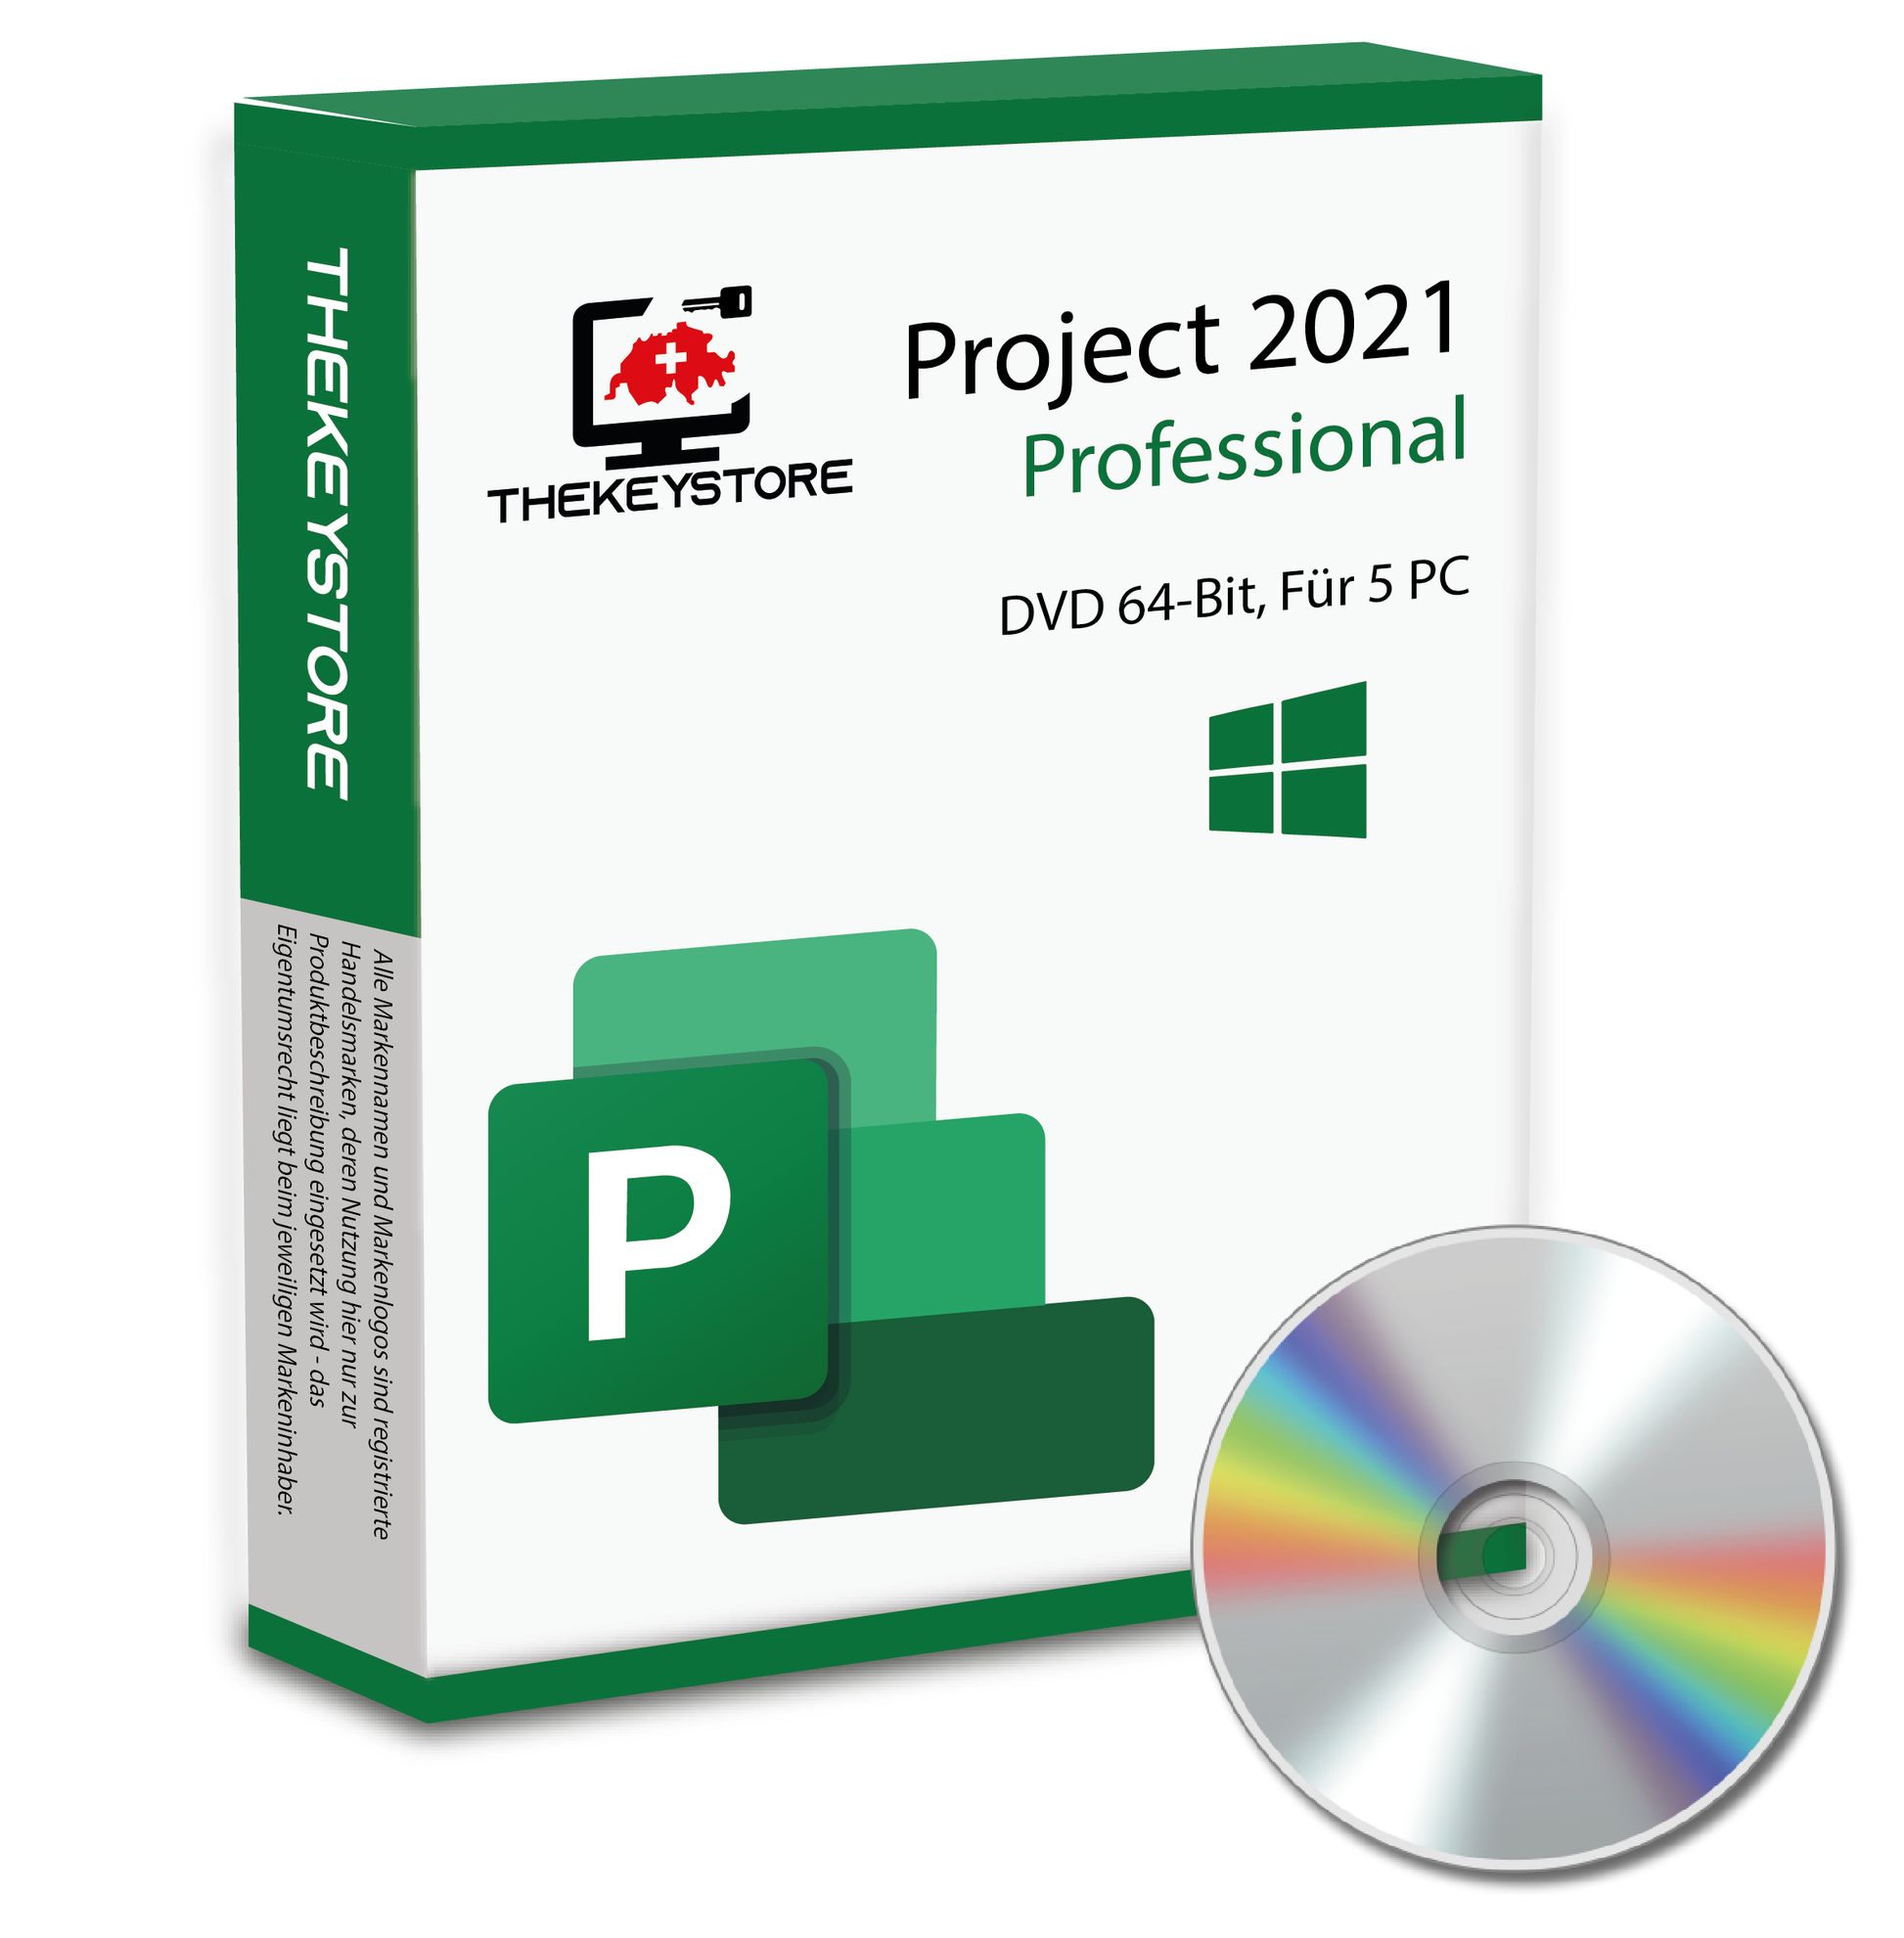 Microsoft Project 2021 Professional - Für 5 PC - TheKeyStore Schweiz